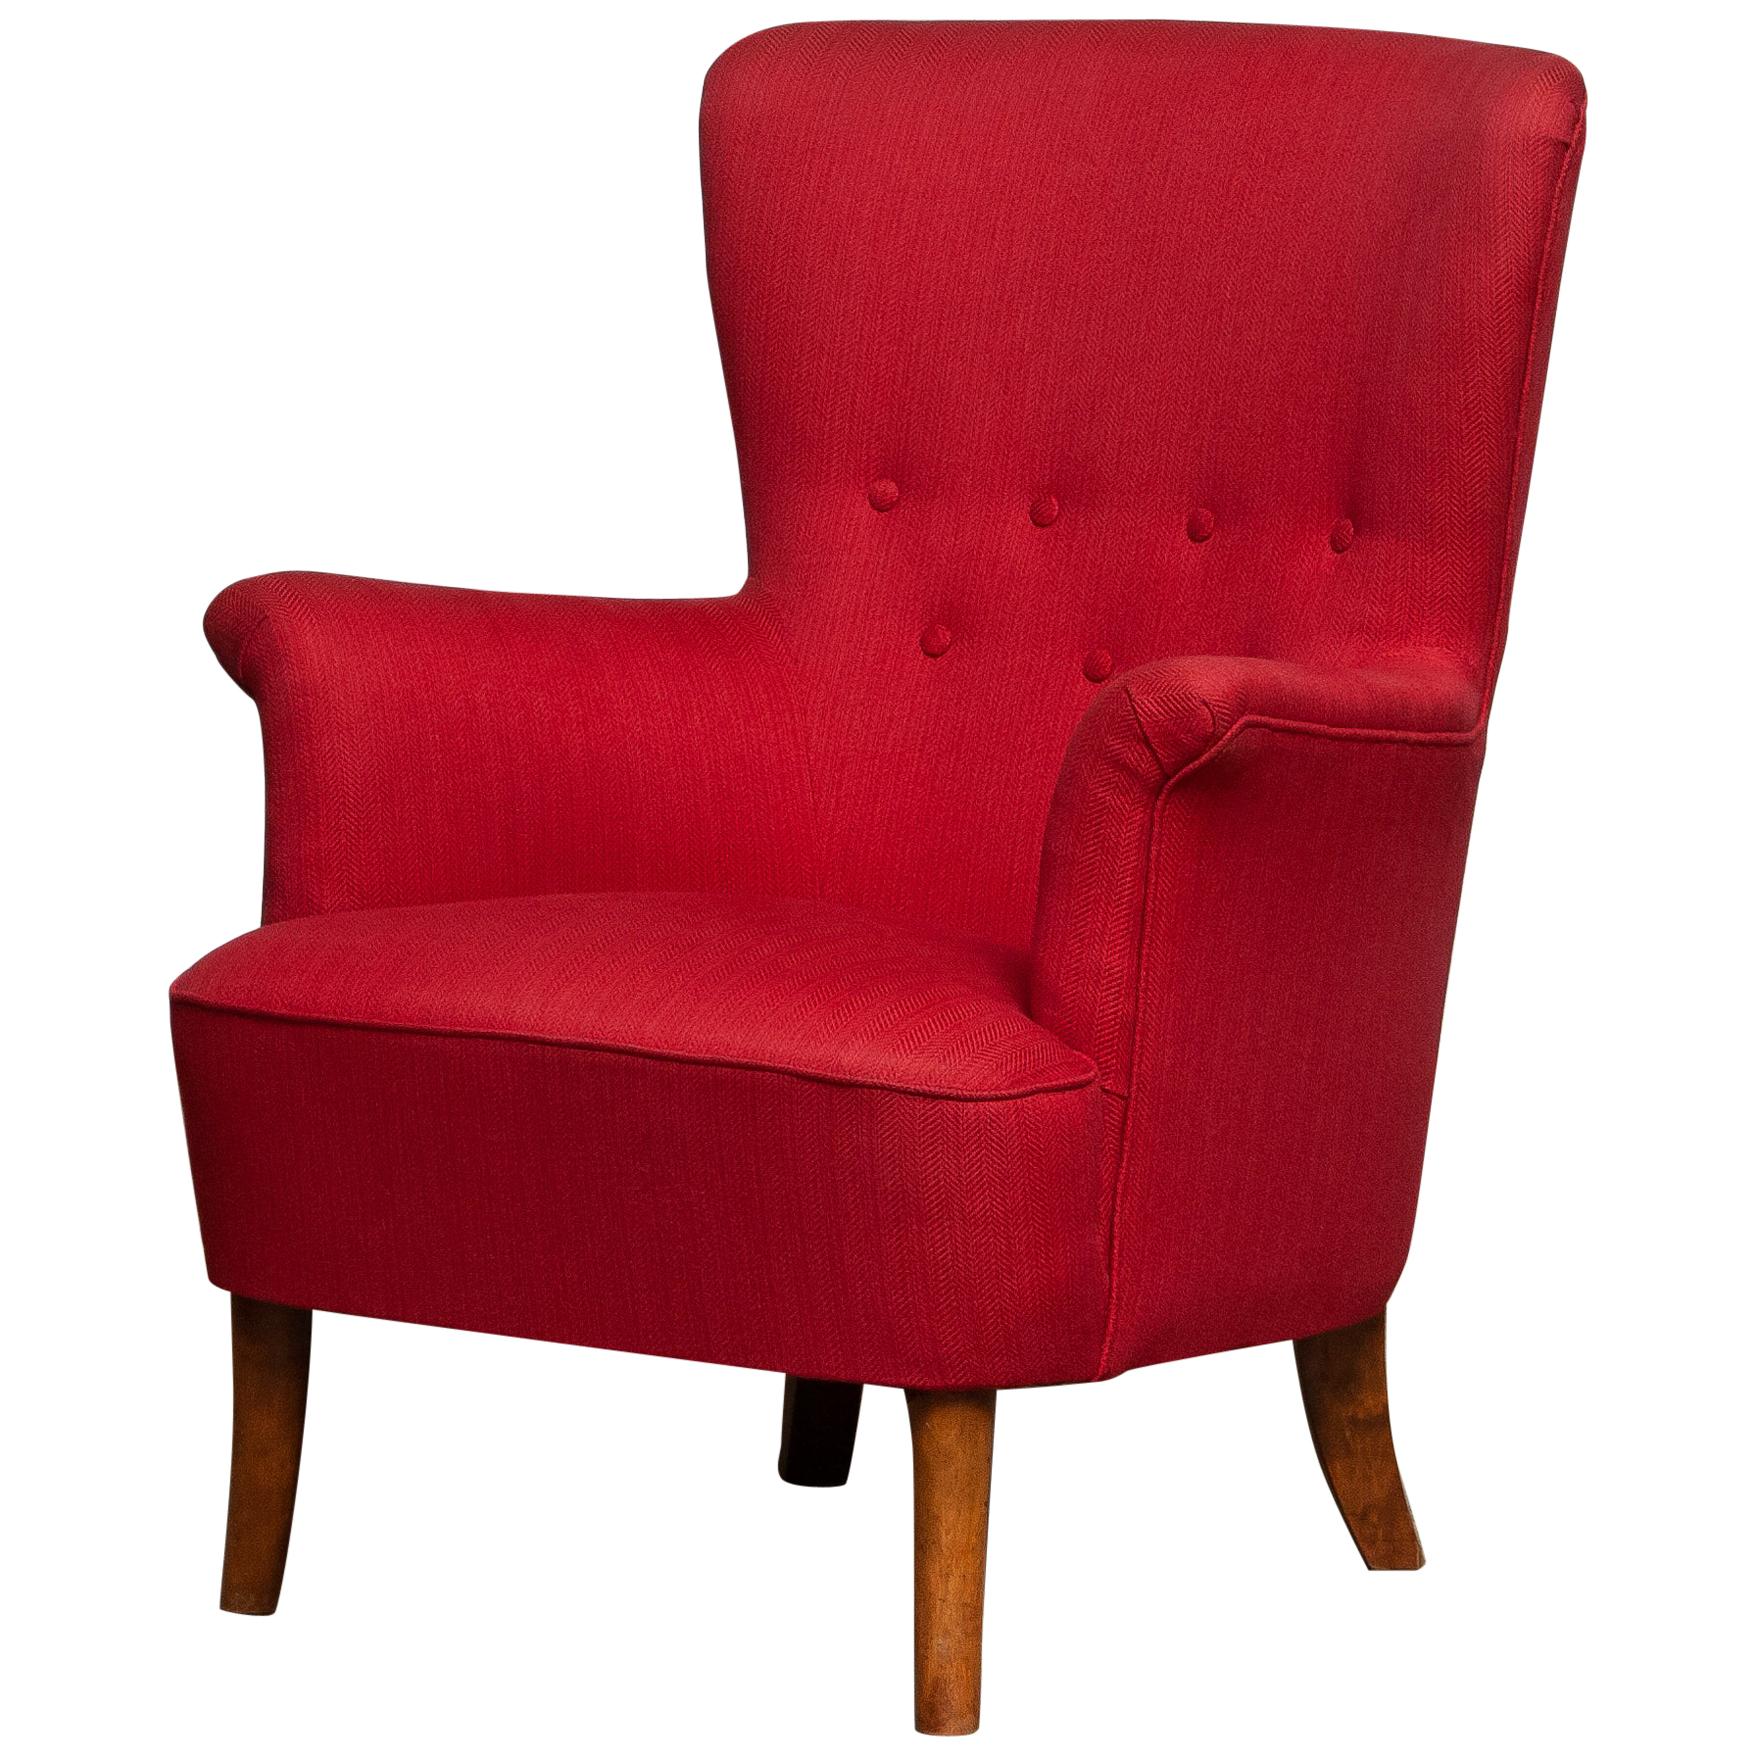 1940s, Fuchsia Easy / Lounge Chair by Carl Malmsten for Oh Sjogren, Sweden